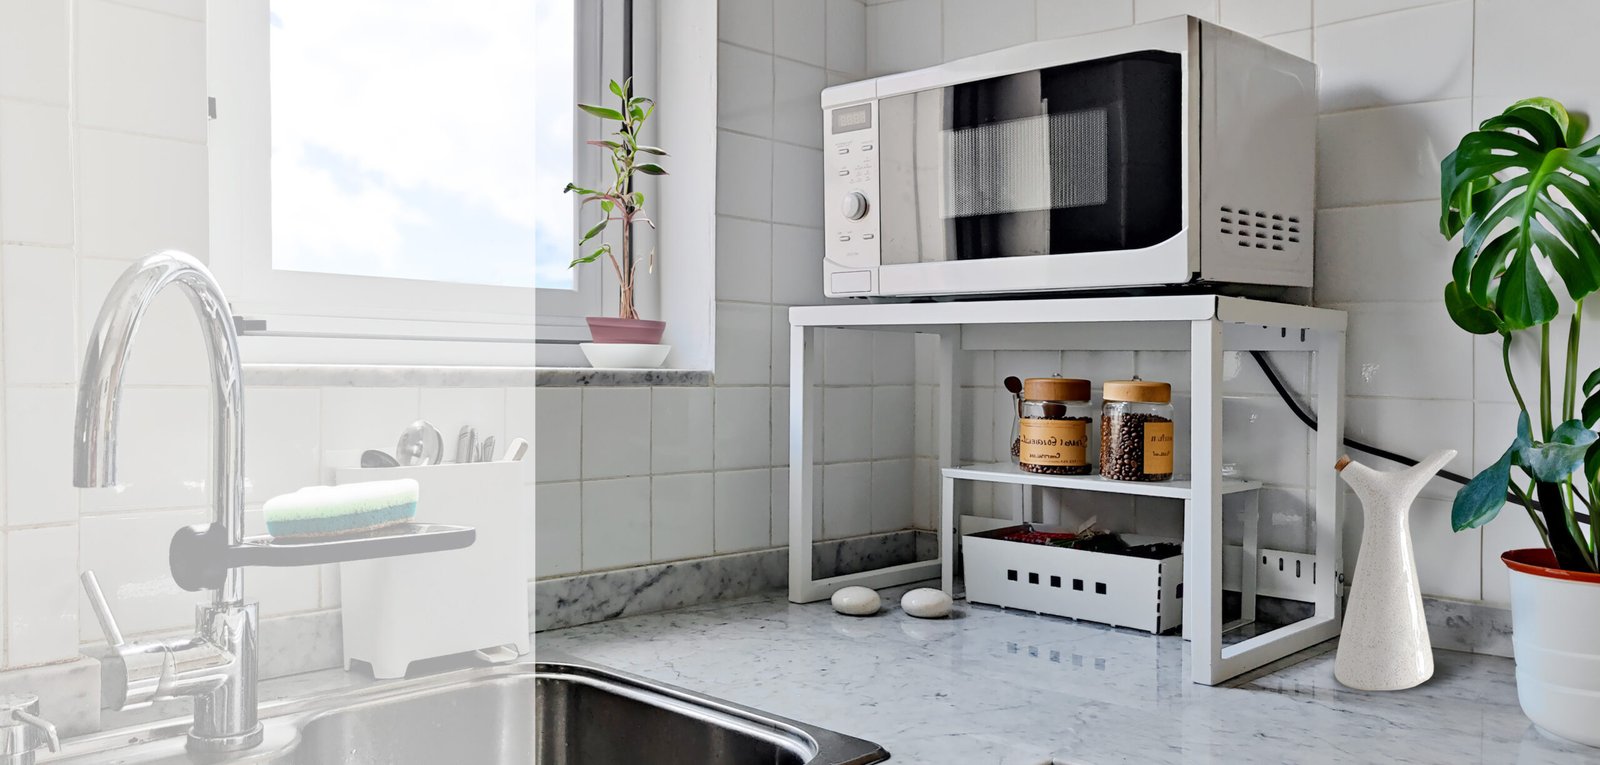 optimiza tu cocina organiza tu espacio cocina mejor productos de diseño para cocina Muett